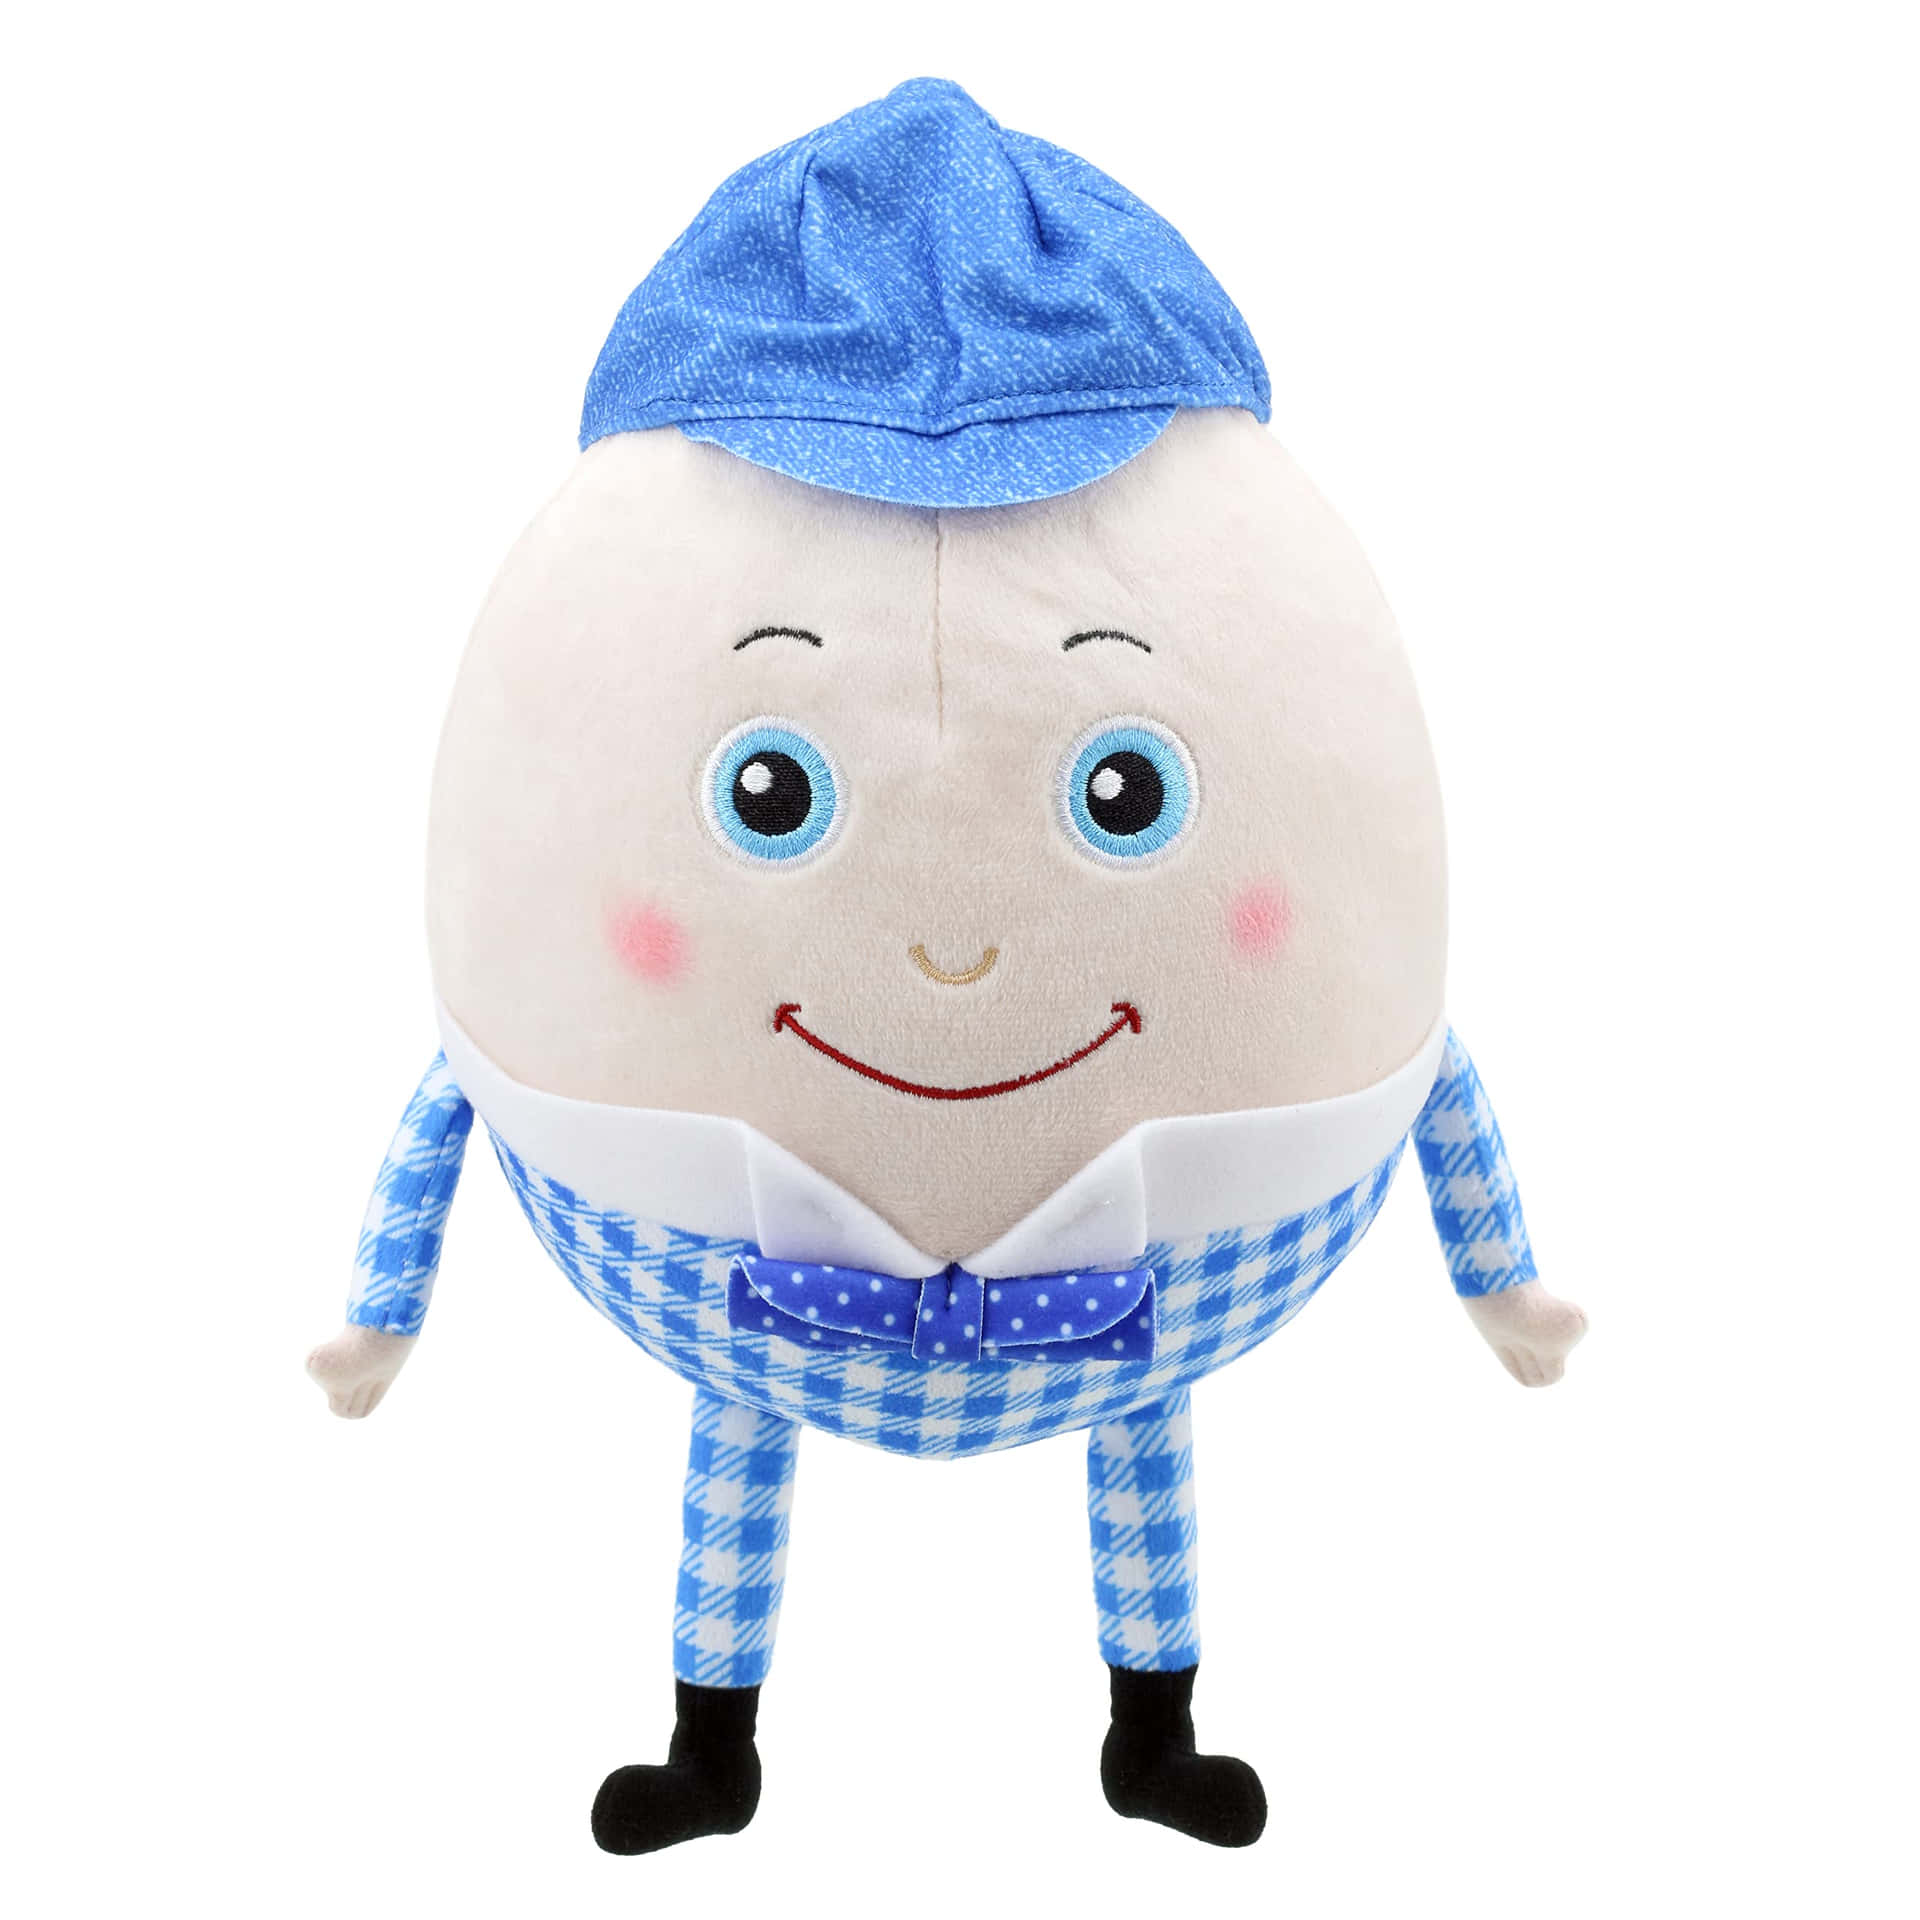 Imagende Humpty Dumpty Llevando Un Sombrero Azul.